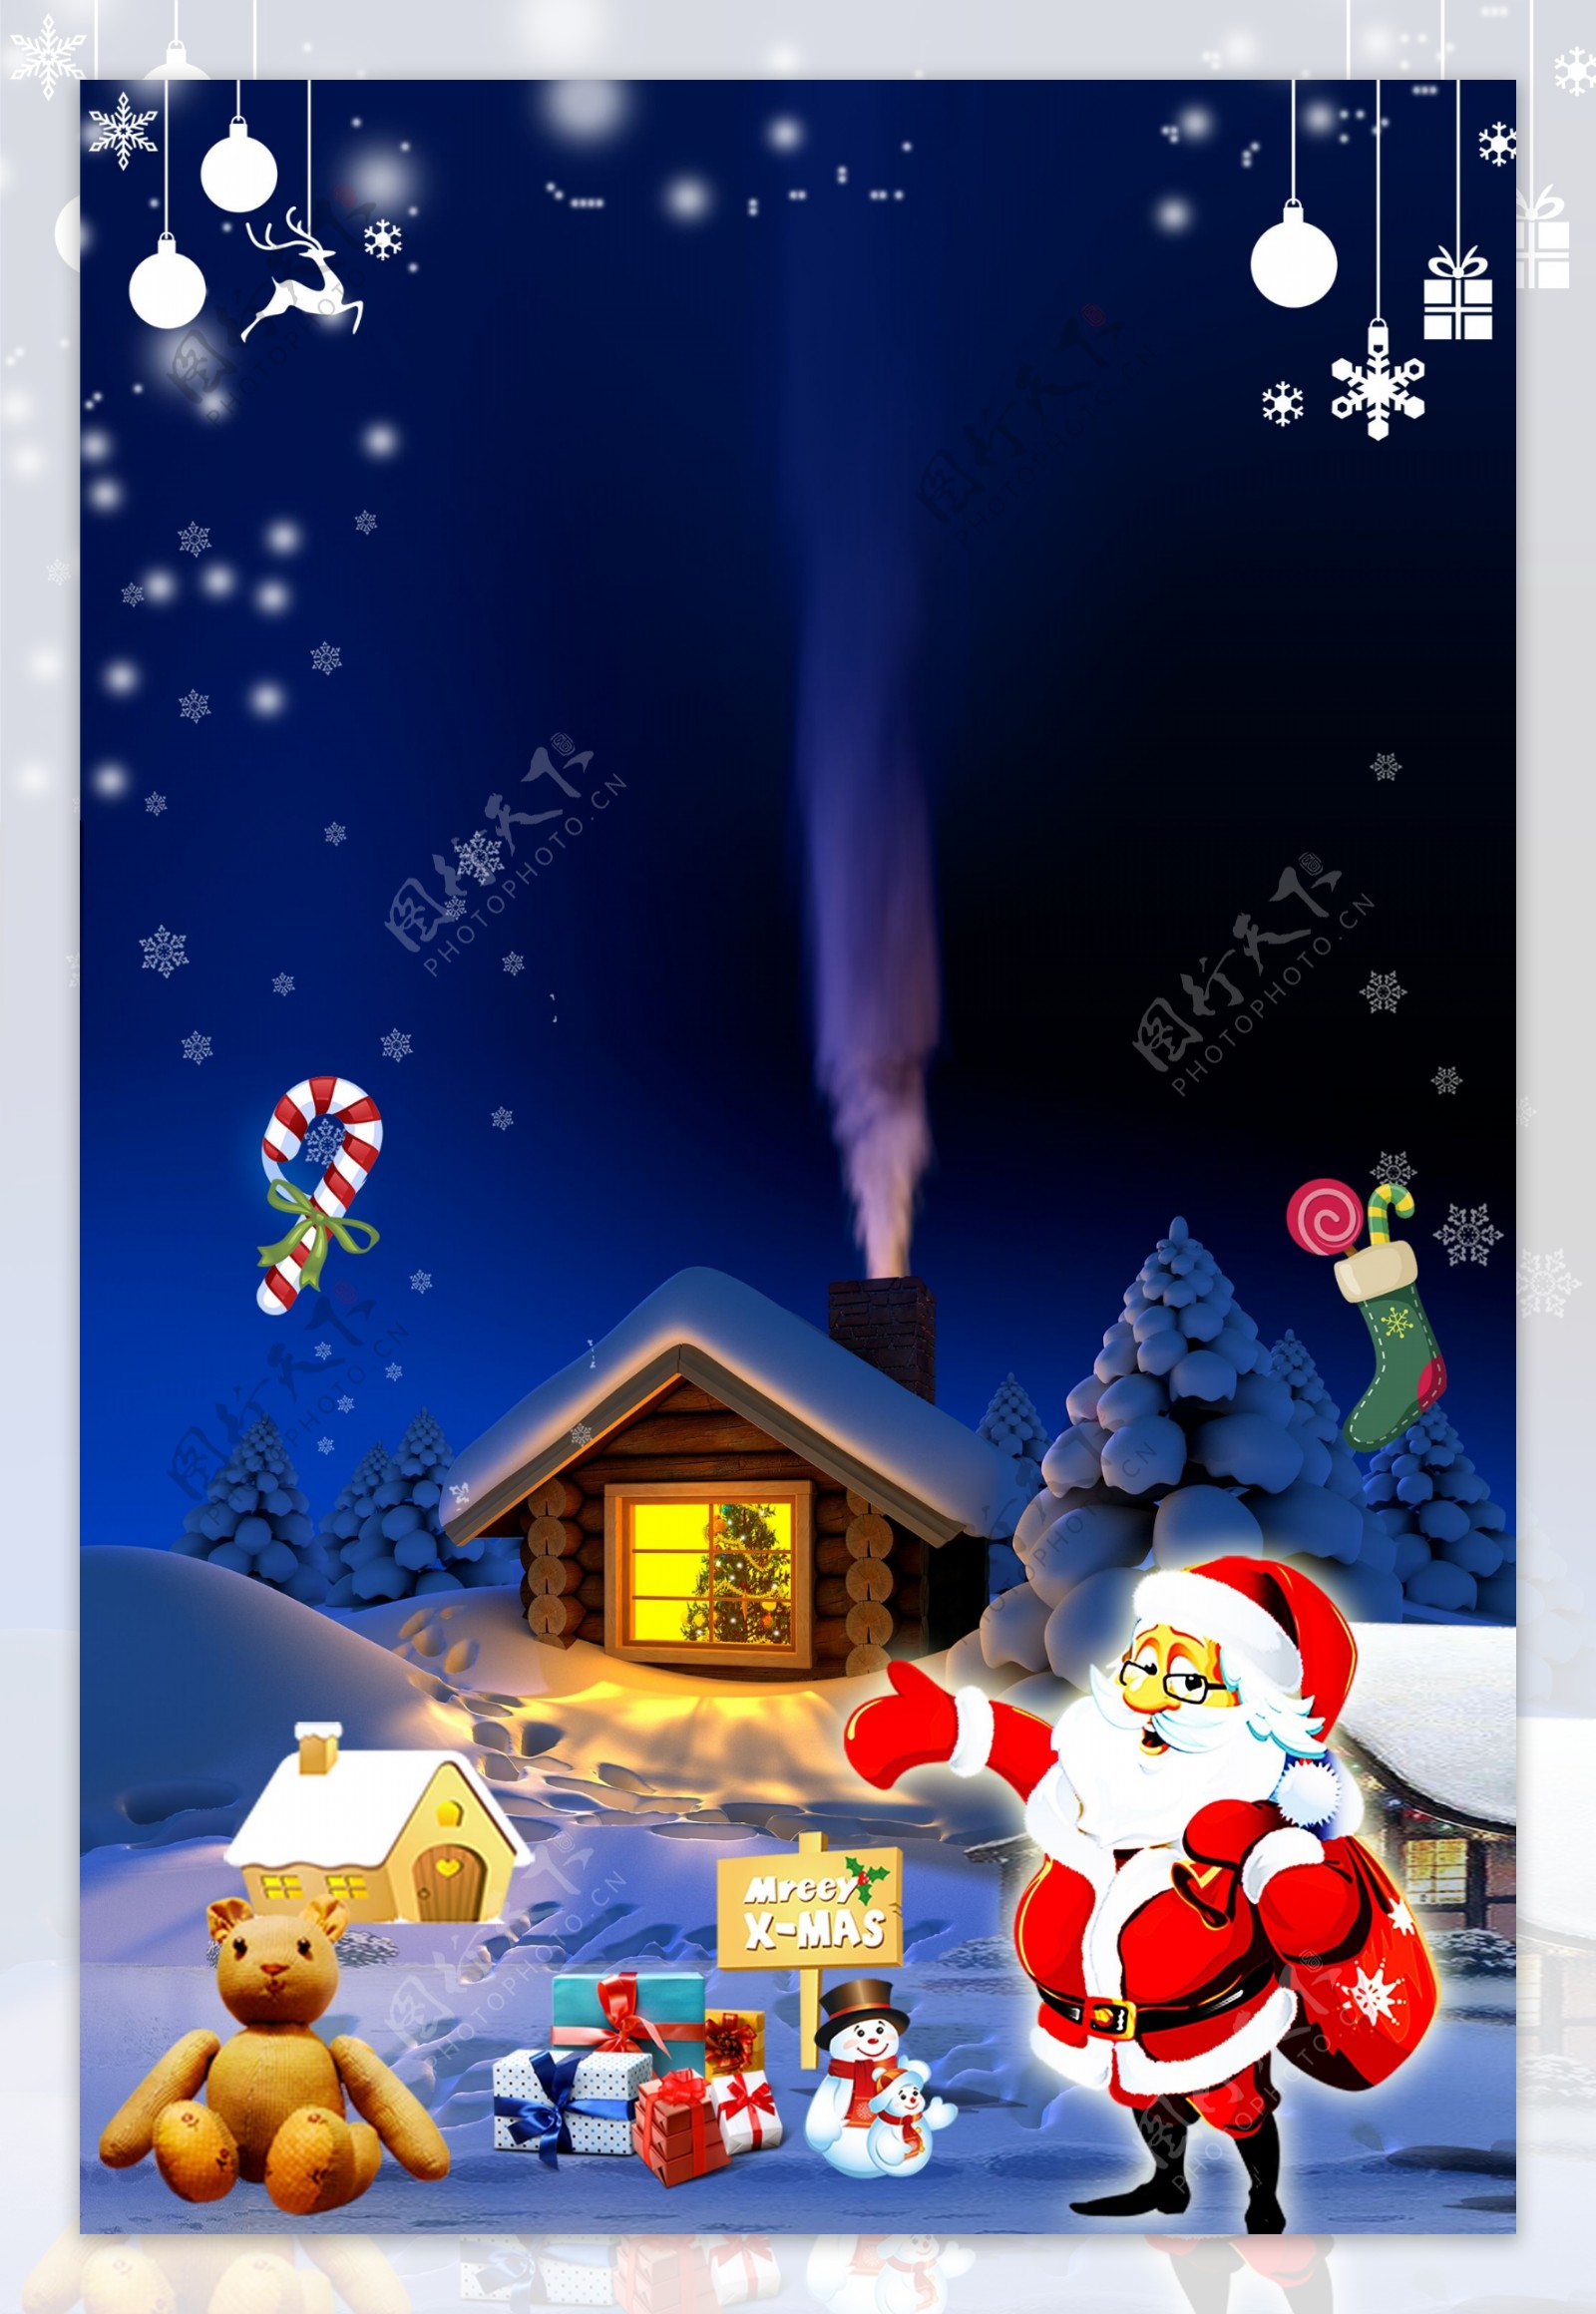 圣节平安夜派礼物的圣诞老人背景图